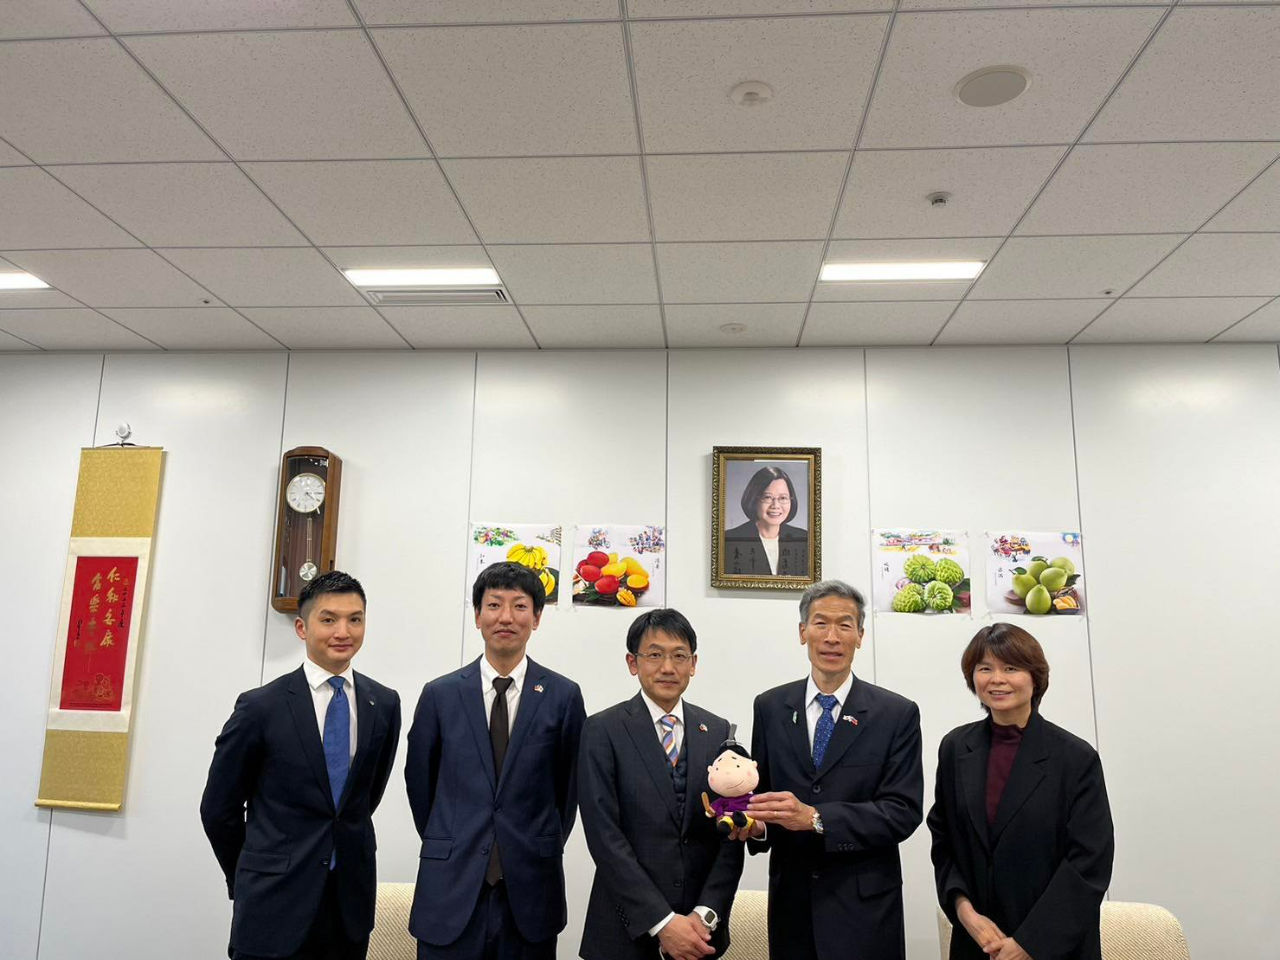 左至右: 島田主任、大塚次長、伏見室長、向處長、林秘書